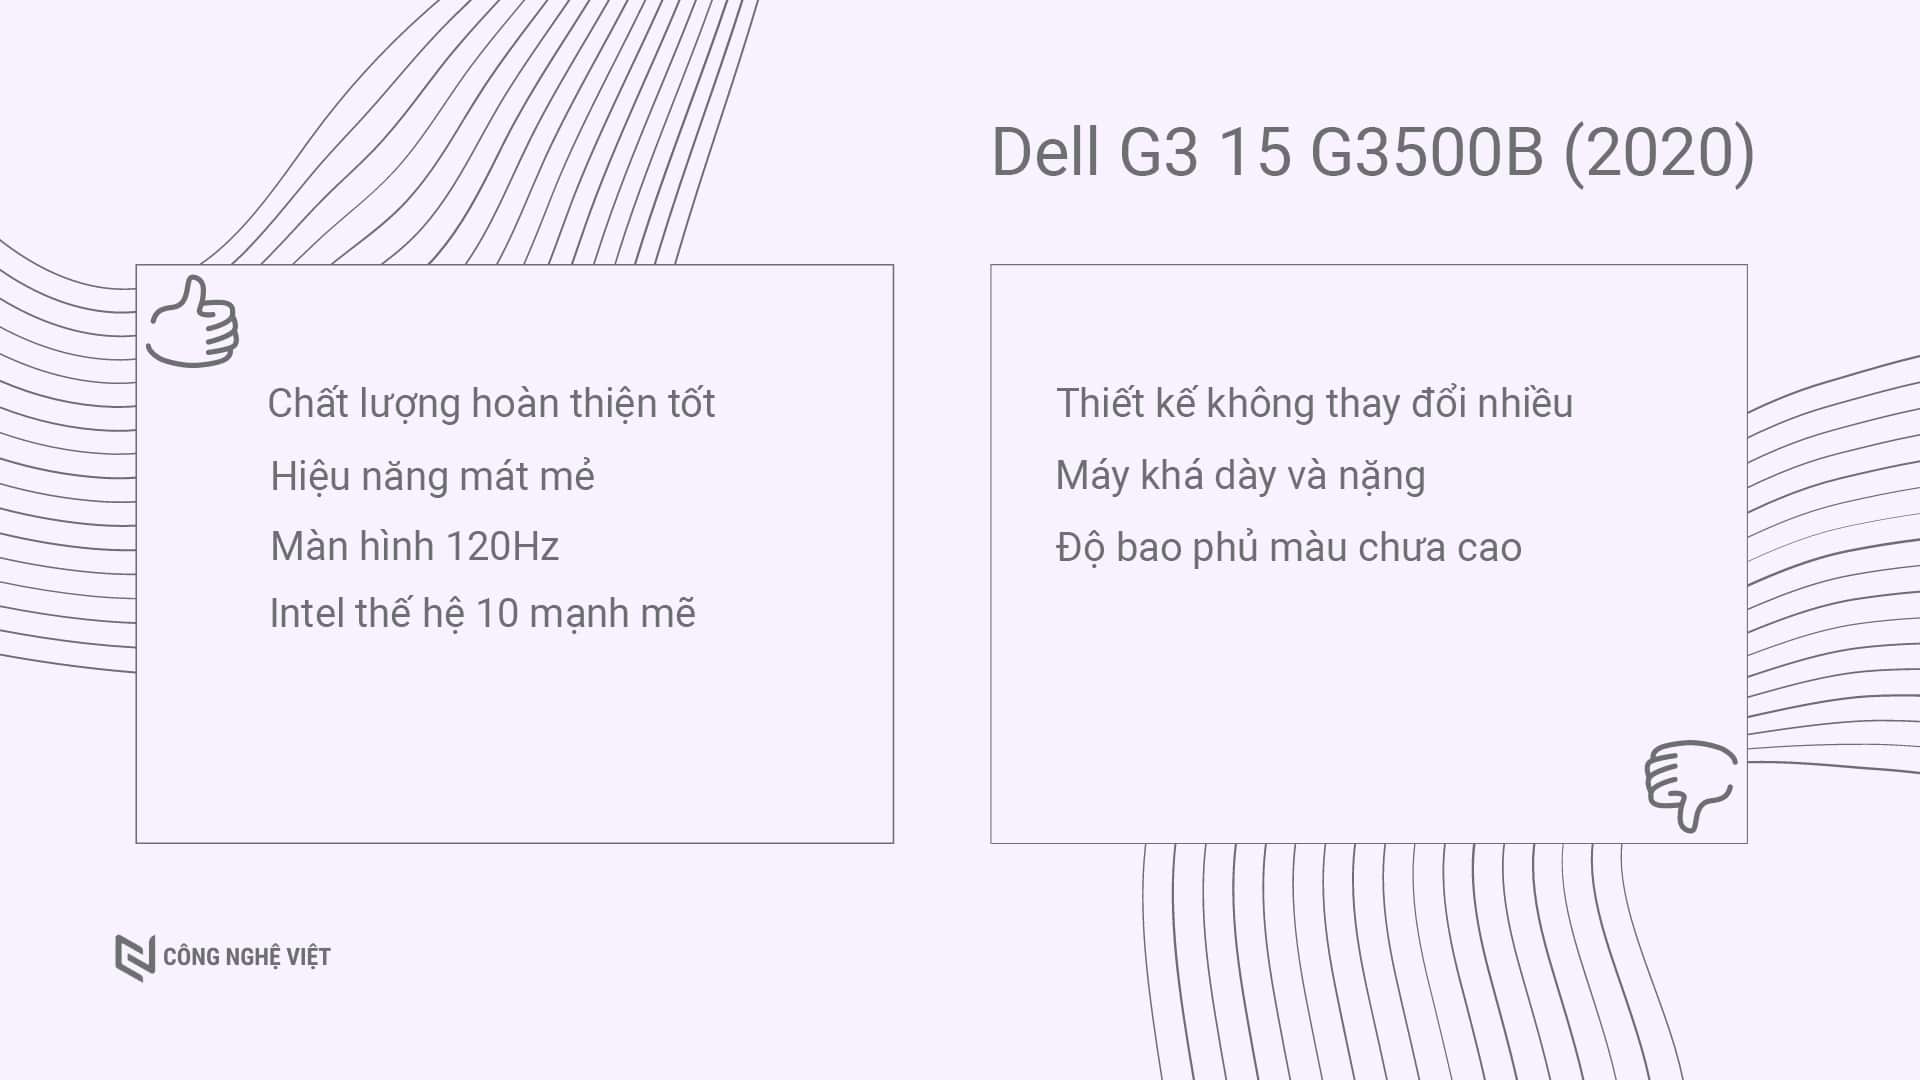 Đánh giá Dell G3 15 3500B bản 2020 chạy CPU Intel thế hệ 10 và GTX 1660 Ti